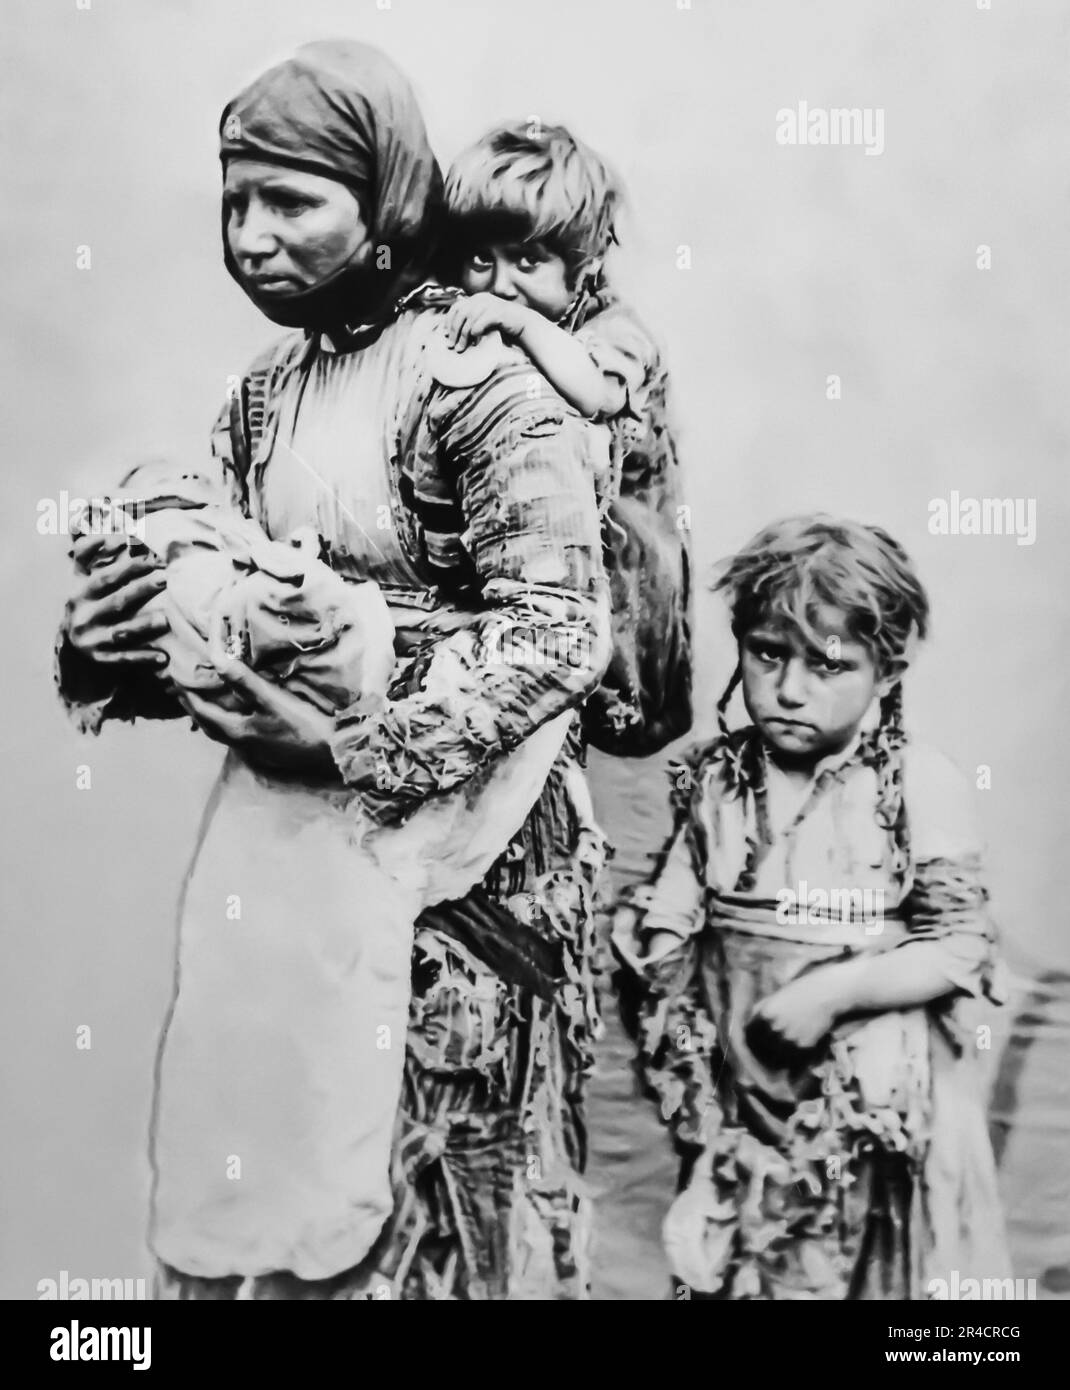 Femme arménienne avec un bébé, survivante des massacres hamidiens Kharbert 1899. Tsitsernakaberd complexe commémoratif du génocide arménien Banque D'Images